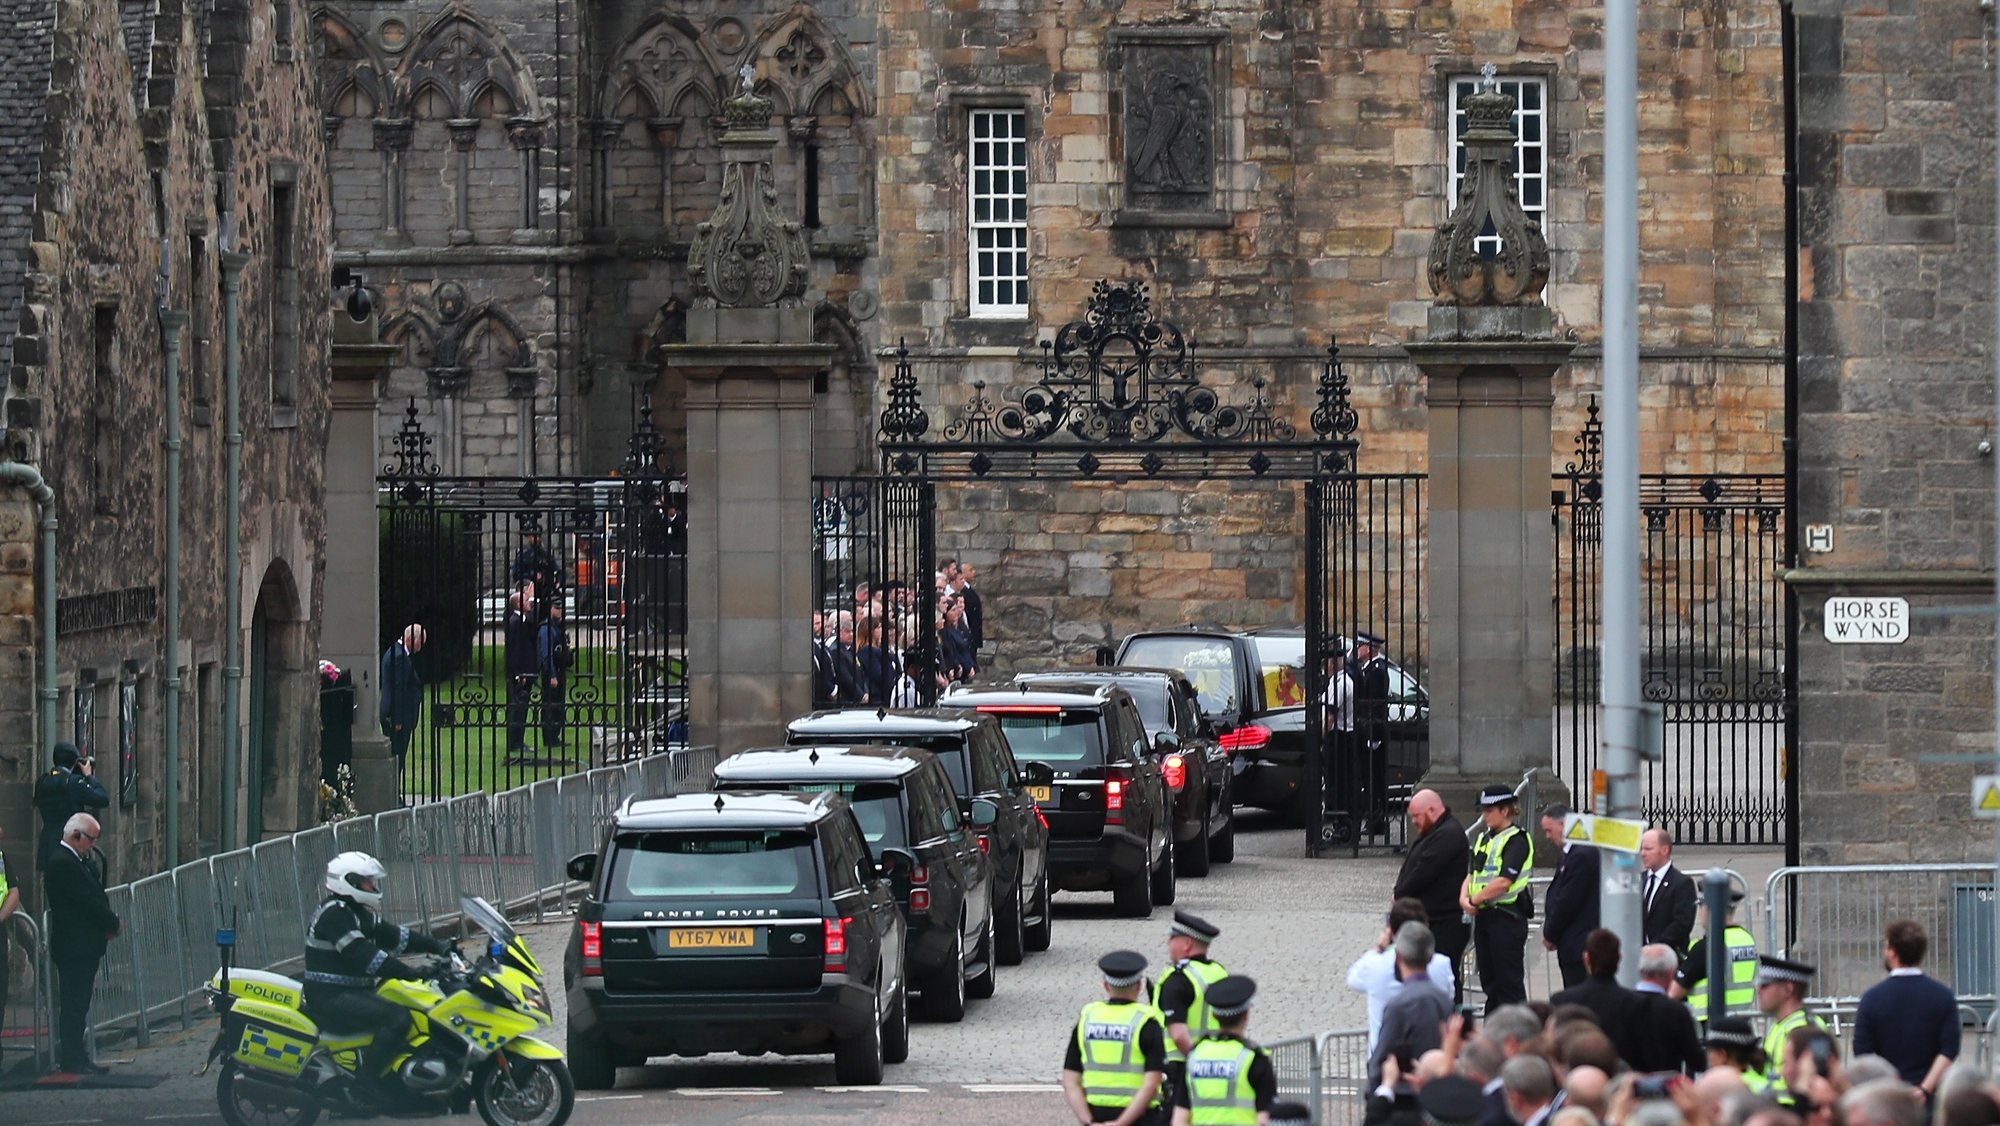 Chegada do caixão com o corpo da Rainha Isabel II ao Palácio de Holyrood, Edimburgo, Escócia, Grã-Bretanha, 11 de setembro de 2022. A Rainha Isabel II morreu a 08 de setembro aos 96 anos no Castelo de Balmoral, na Escócia, após mais de 70 anos do mais longo reinado da história do Reino Unido. NUNO VEIGA/LUSA